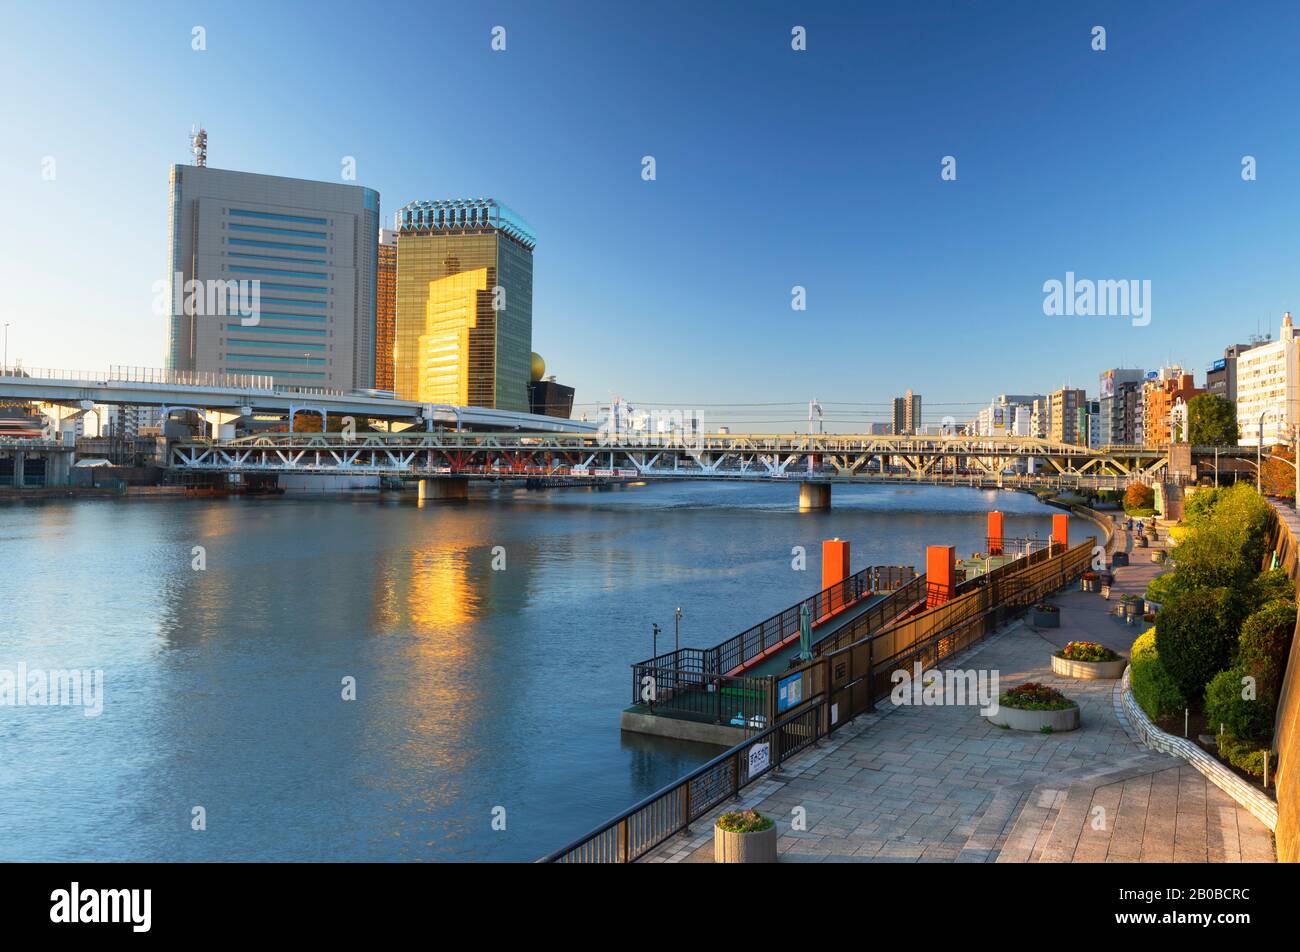 Asahi Breweries Tower and Sumida River, Tokyo, Japan Stock Photo